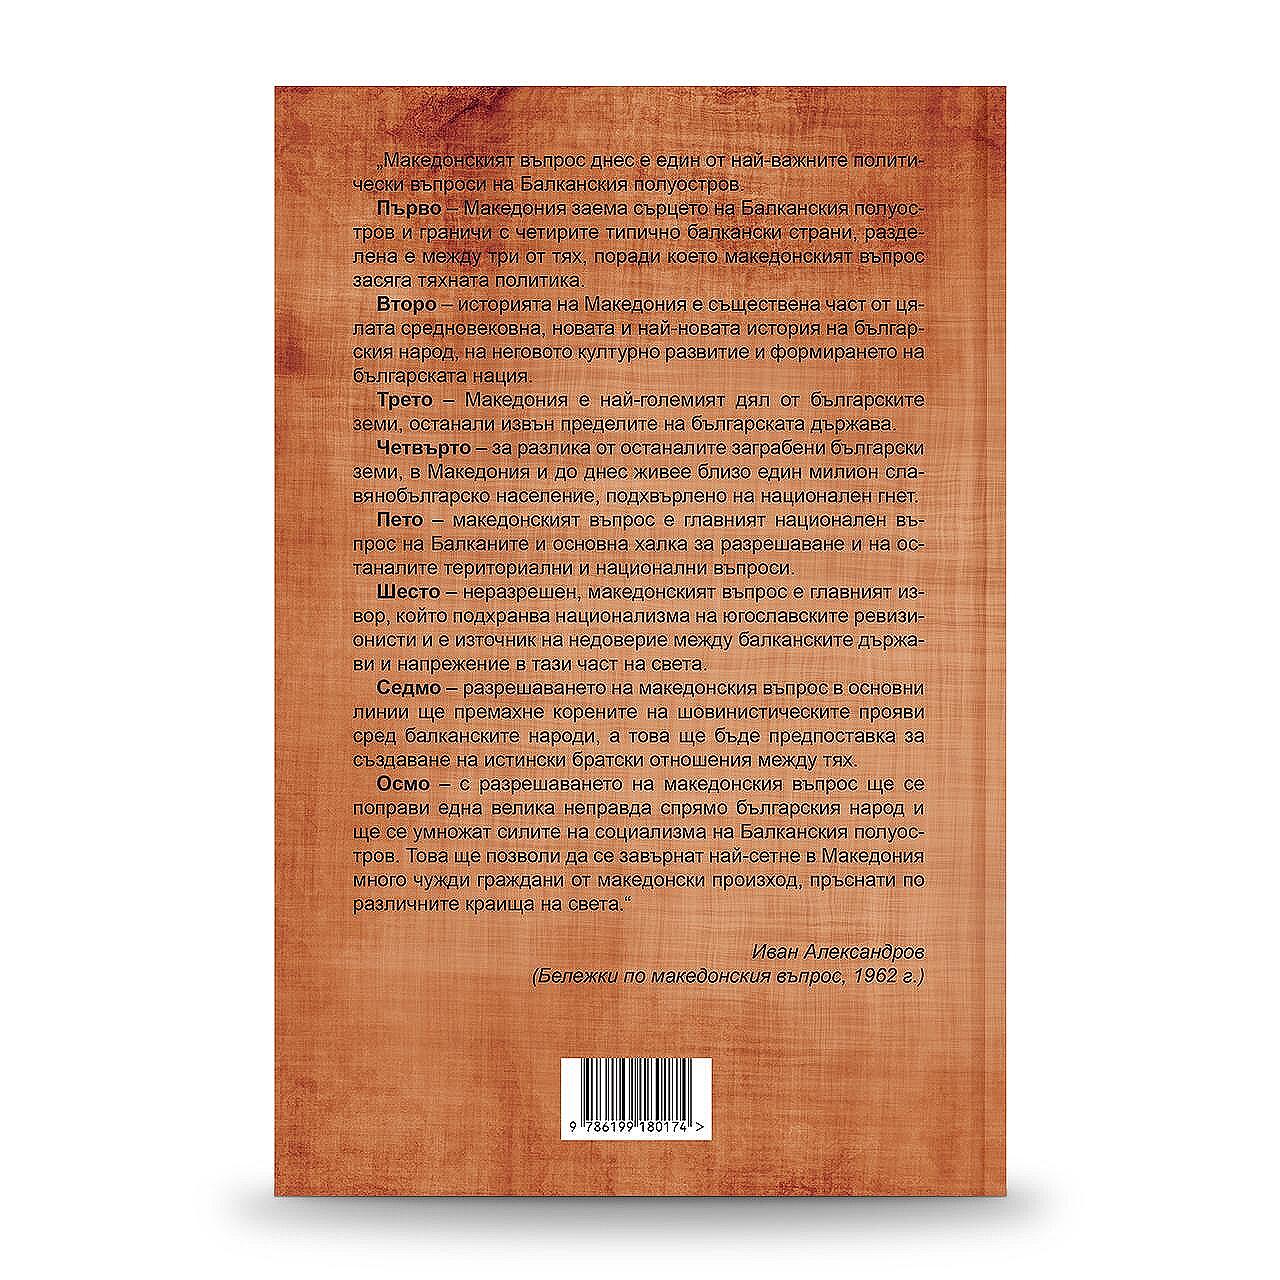 Книгата „Възраждането на държавническата мисъл в България през 60-те години на XX век. Секретни документи от архива на Иван Александров“